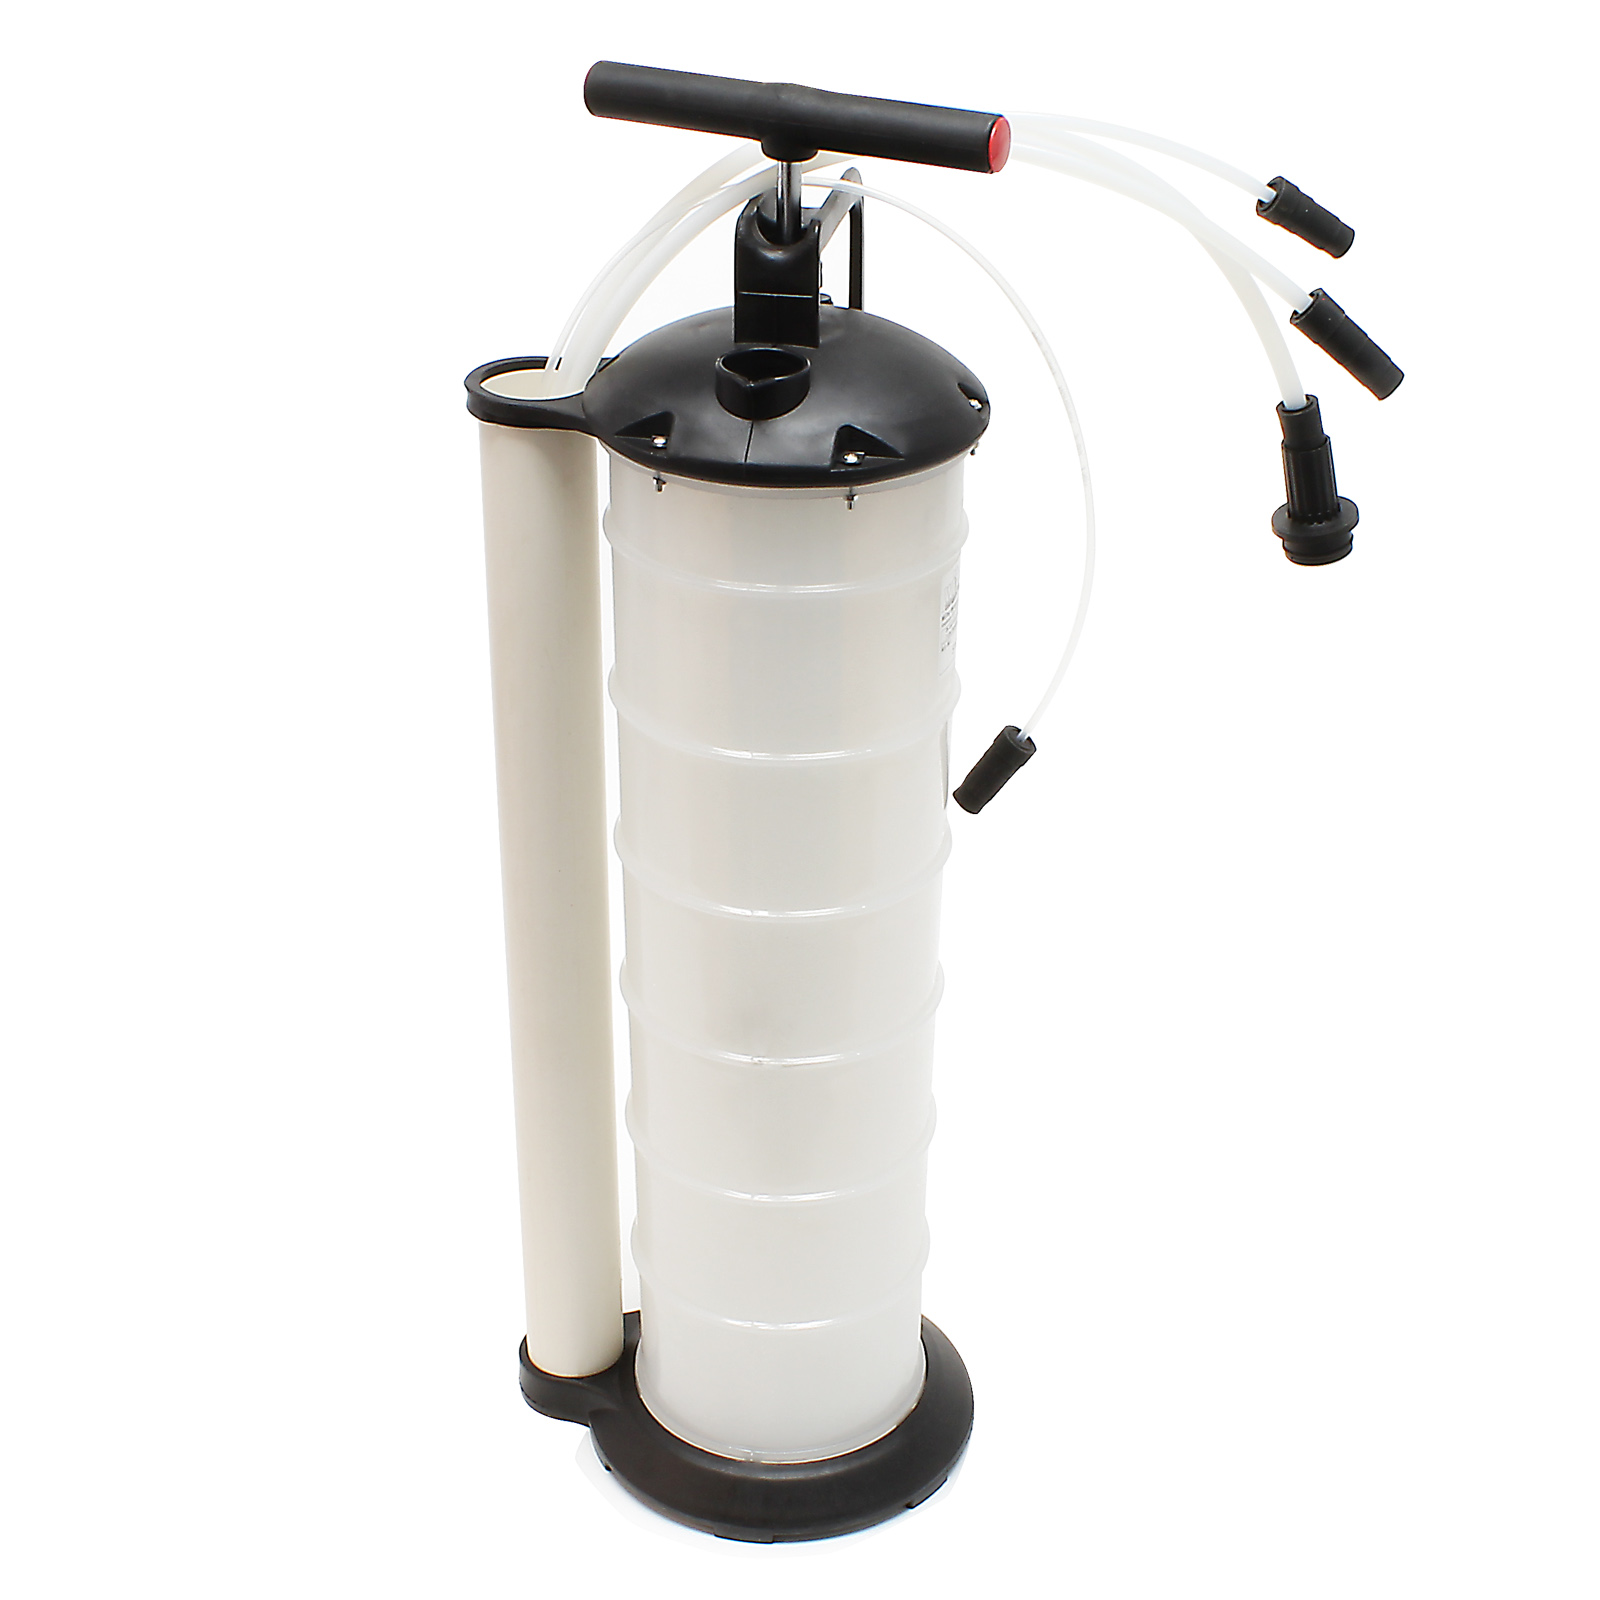 Öl- und Flüssigkeitenabsaugpumpe 7 Liter mit Schläuchen